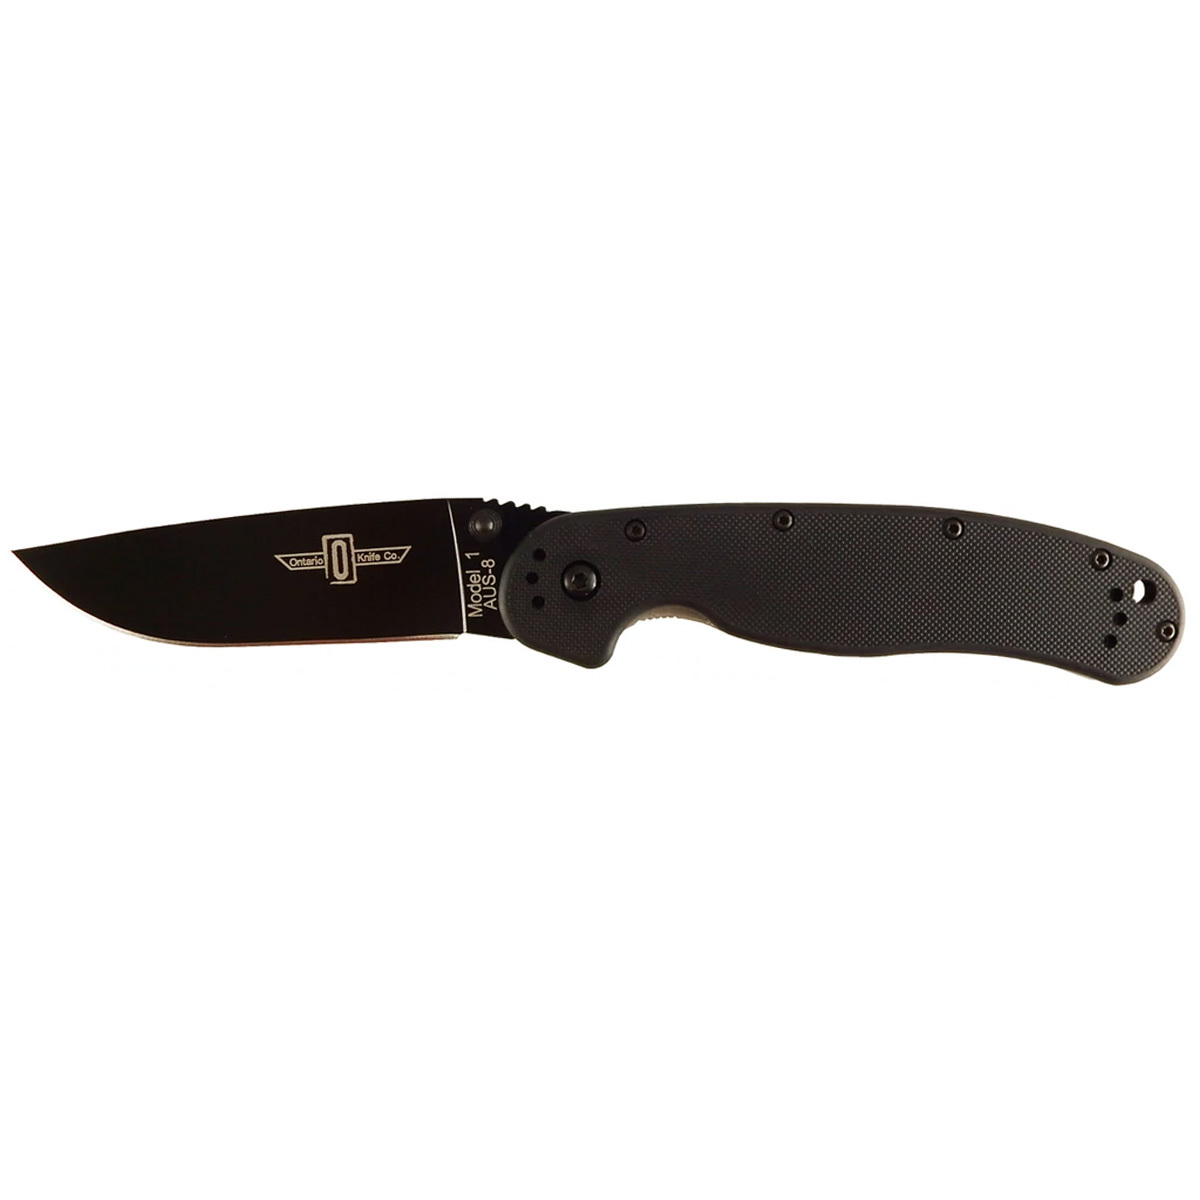 Нож Ontario 8846 RAT 1 Black нож с фиксированным клинком ontario rd4 black micarta серрейтор